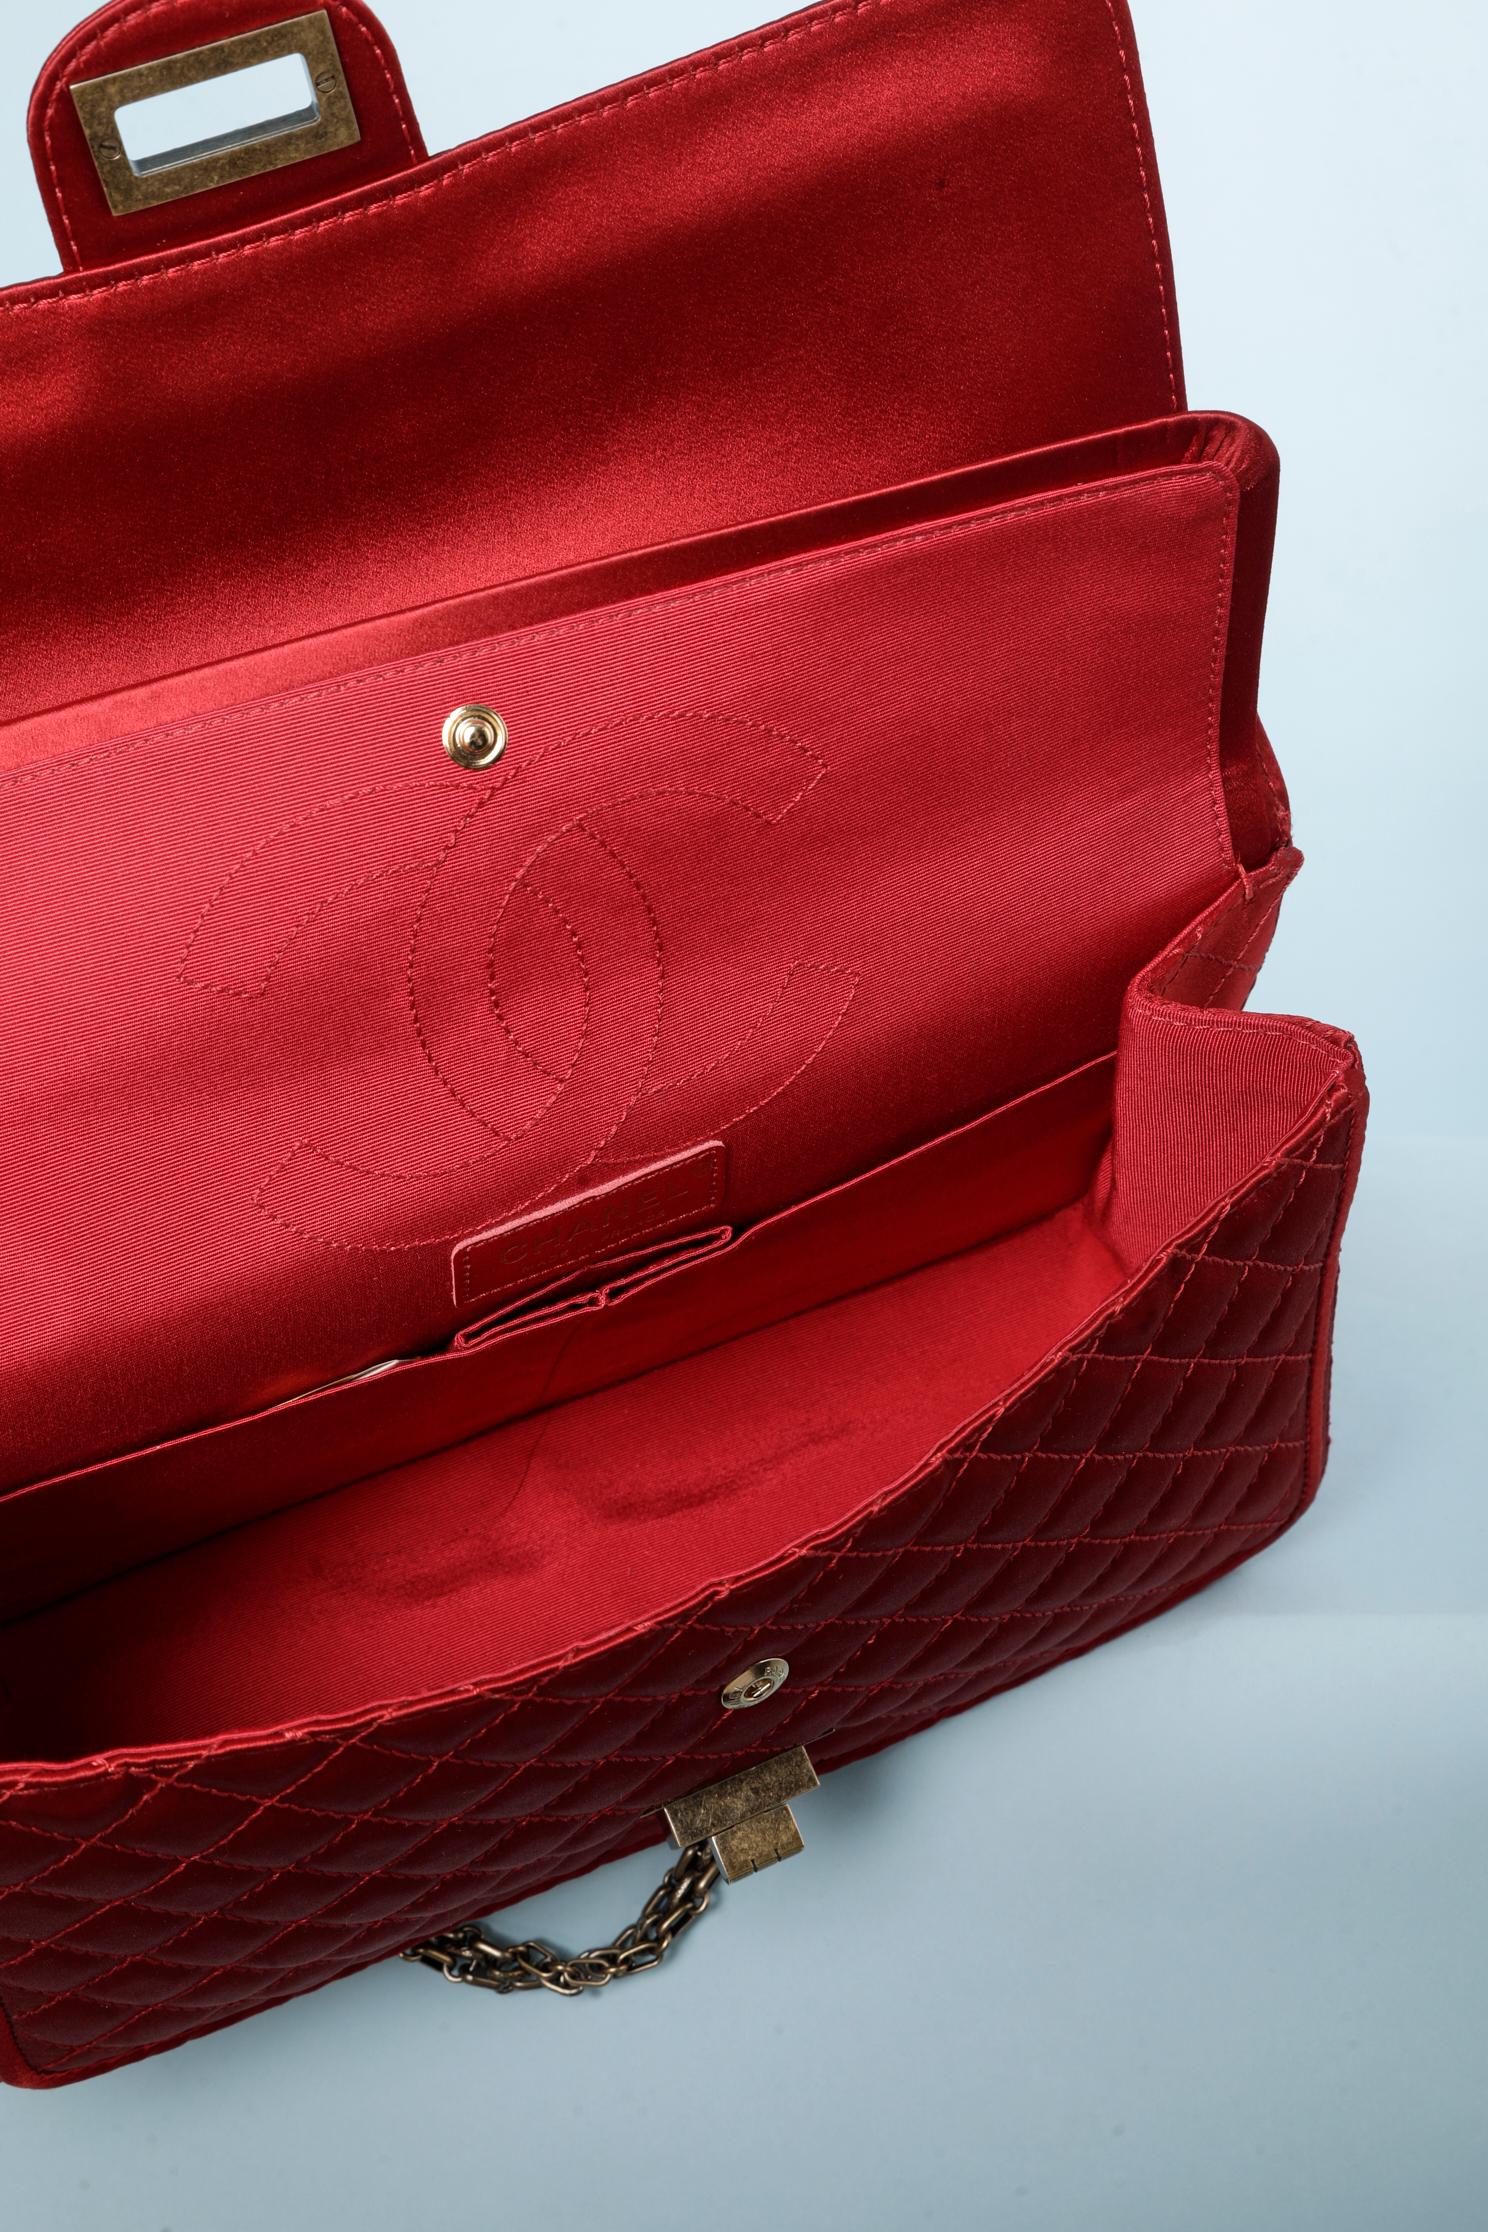 Satin Ruby Chanel bag Collection Paris-Shangai Métiers d'Arts 2011 For Sale 7